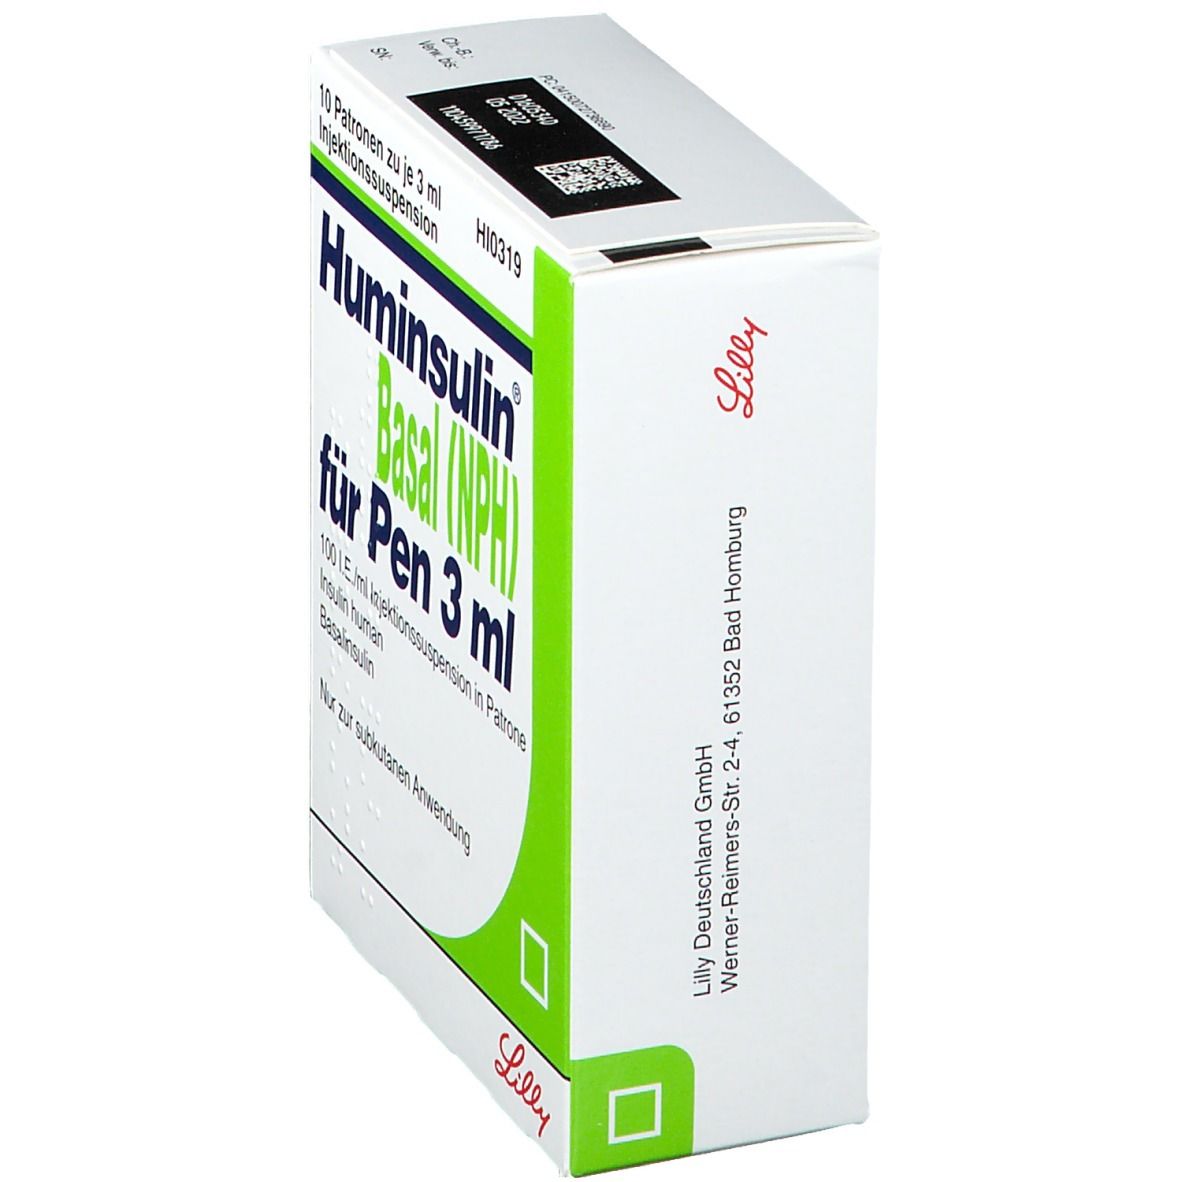 Huminsulin® Basal (NPH) für Pen 3 ml